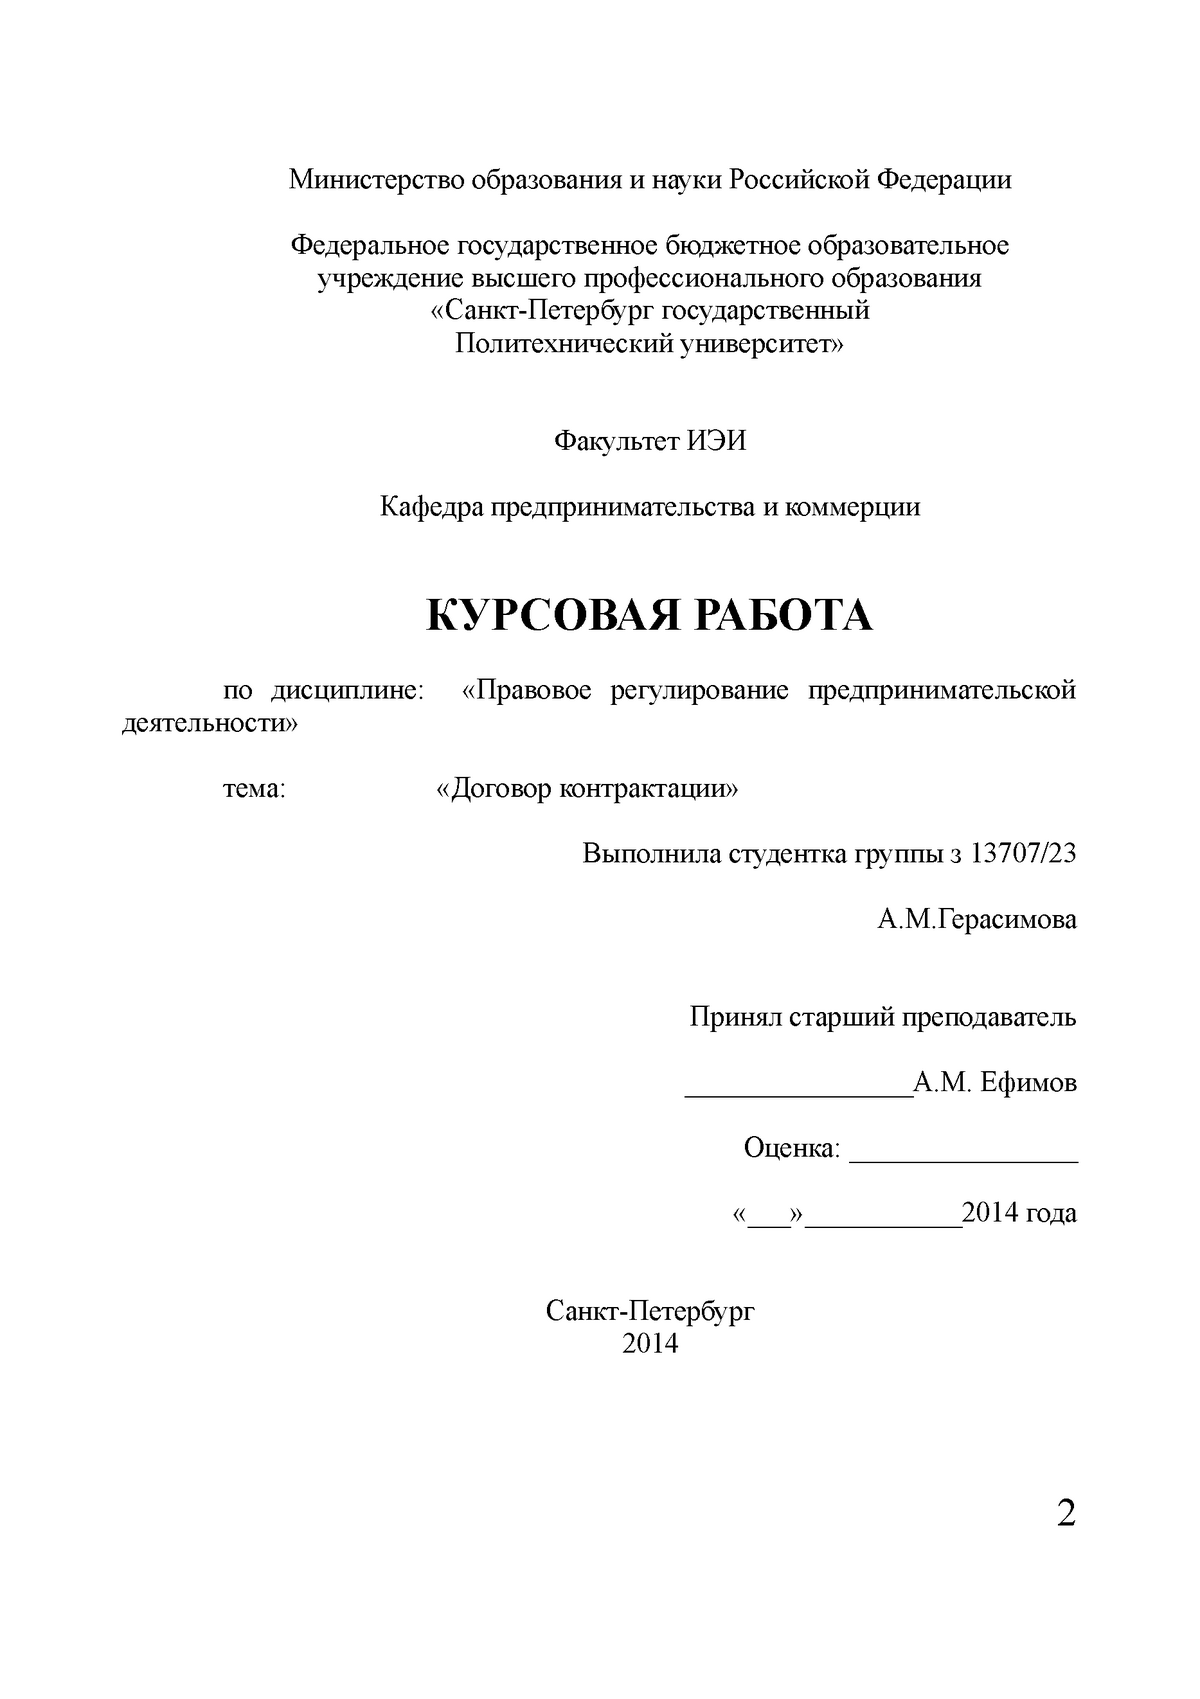 Курсовая работа «Договор контрактации» - Министерство образования и науки  Российской Федерации - Studocu